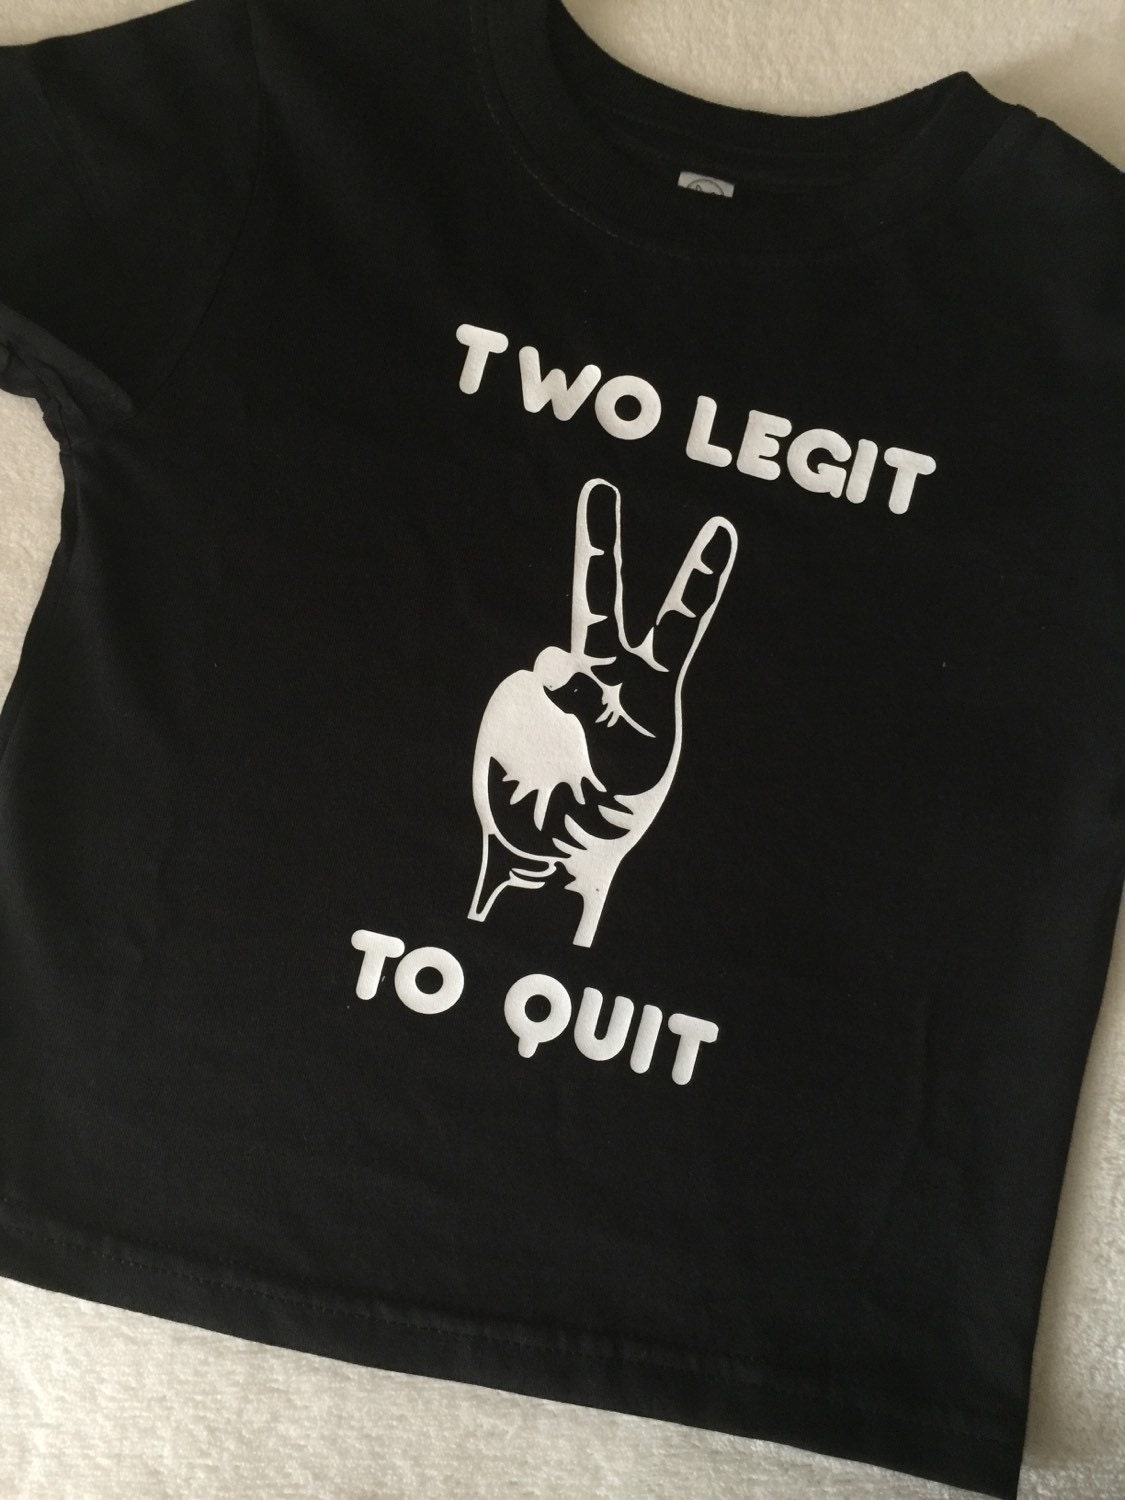 too legit to quit t shirt